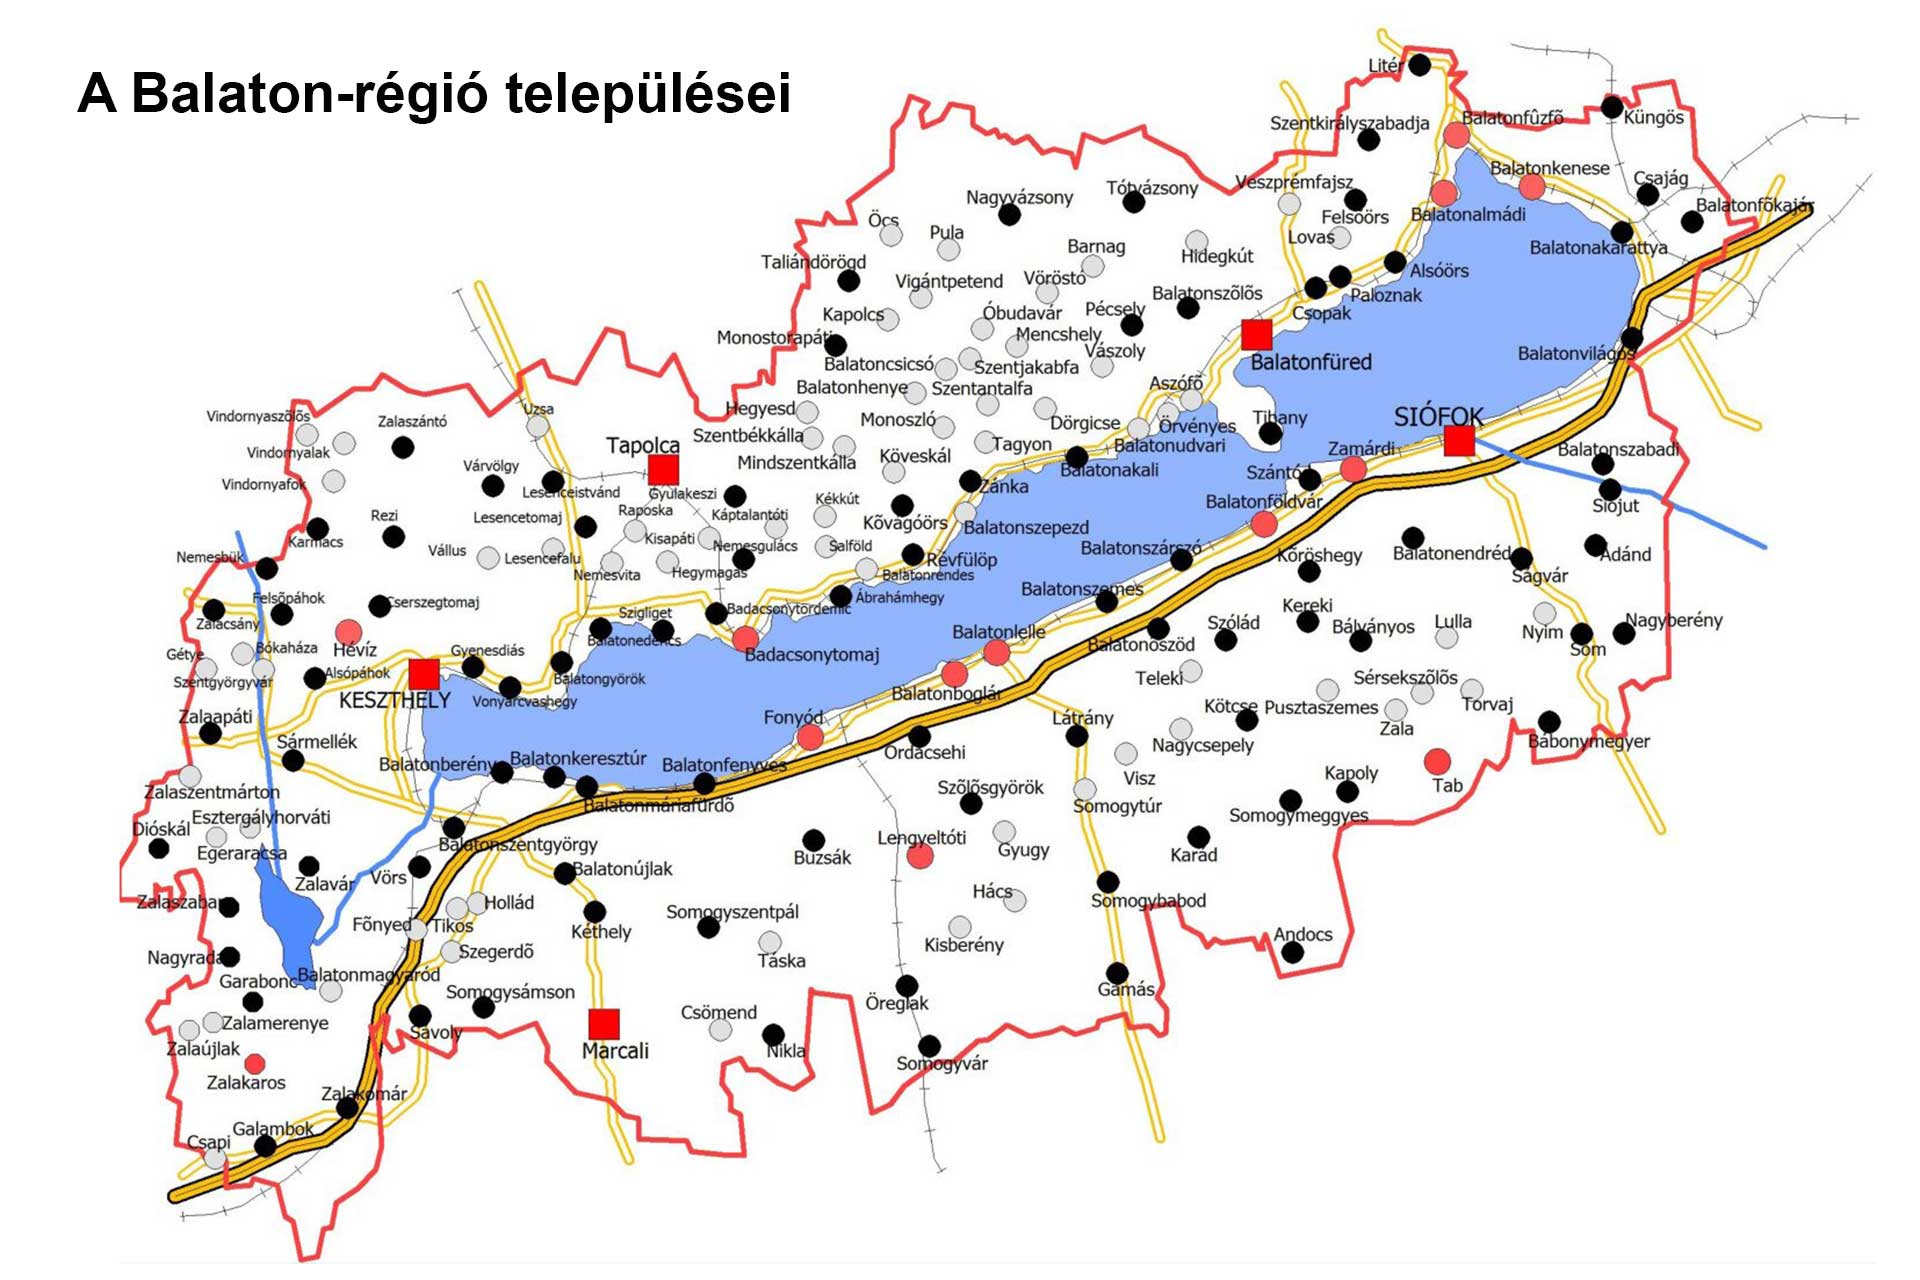 A Balaton-régió települései, térképen